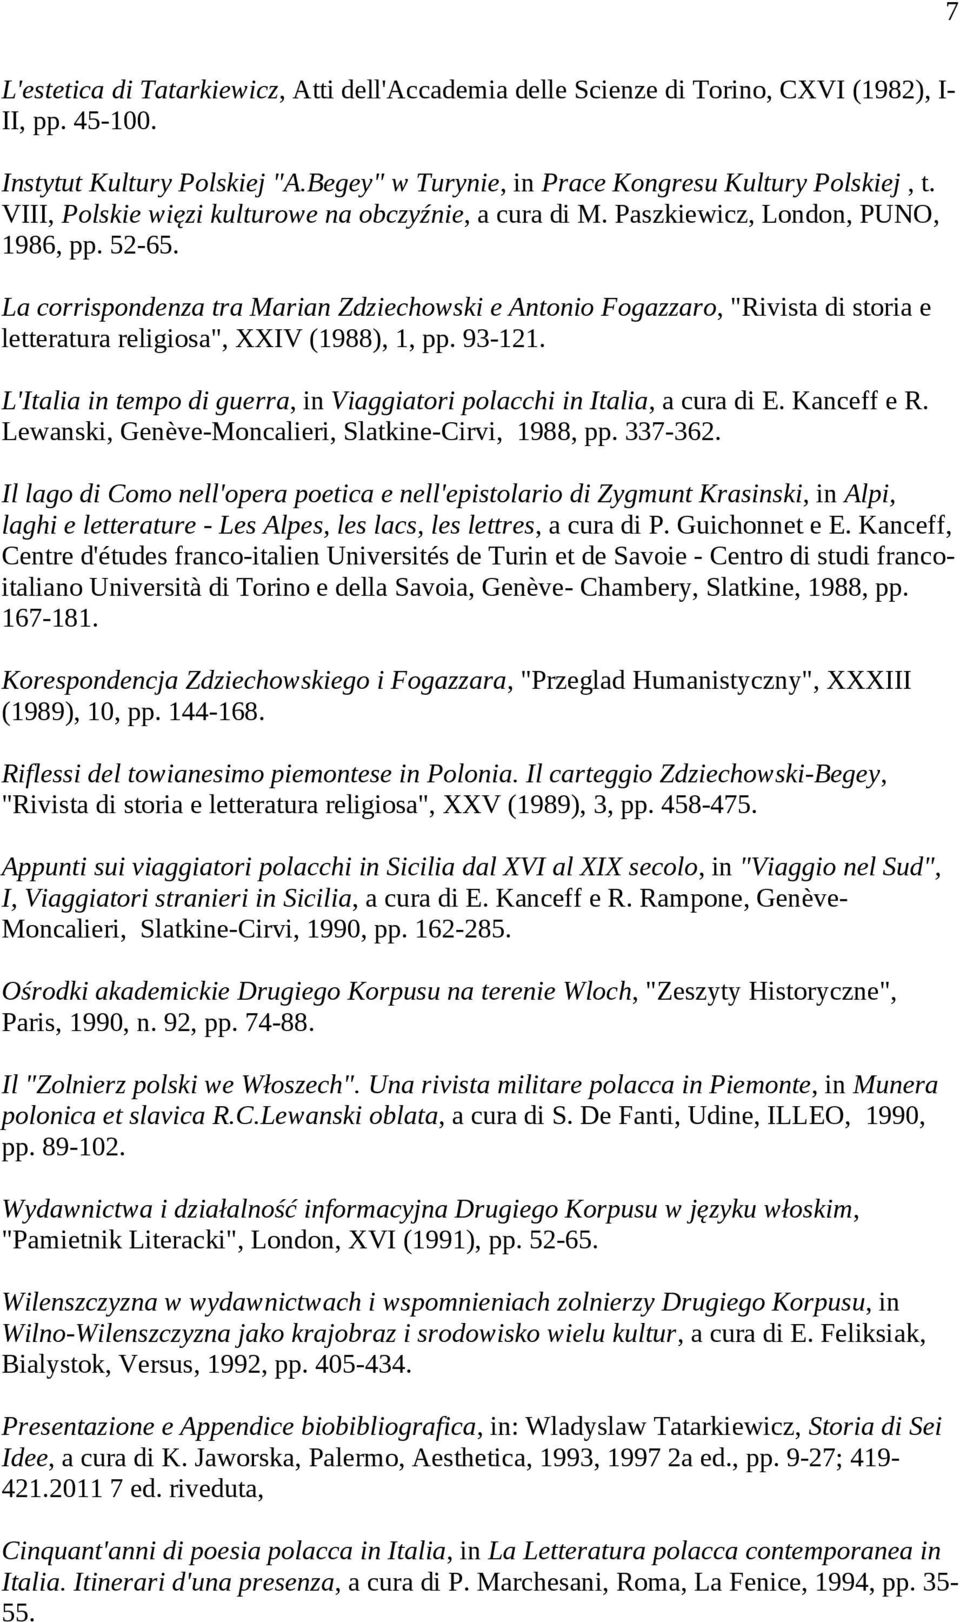 La corrispondenza tra Marian Zdziechowski e Antonio Fogazzaro, "Rivista di storia e letteratura religiosa", XXIV (1988), 1, pp. 93-121.